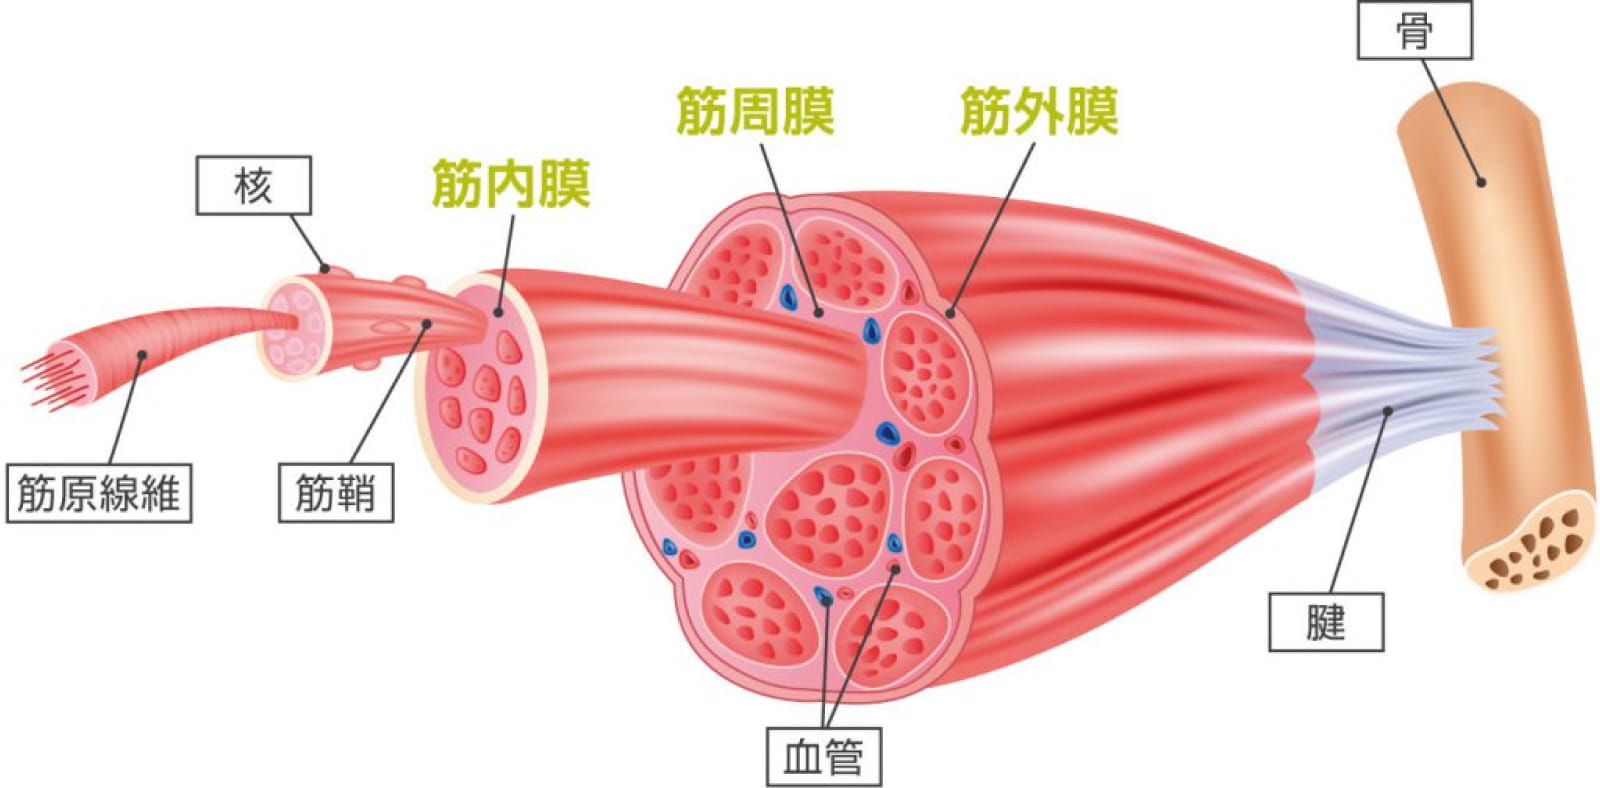 筋膜の画像